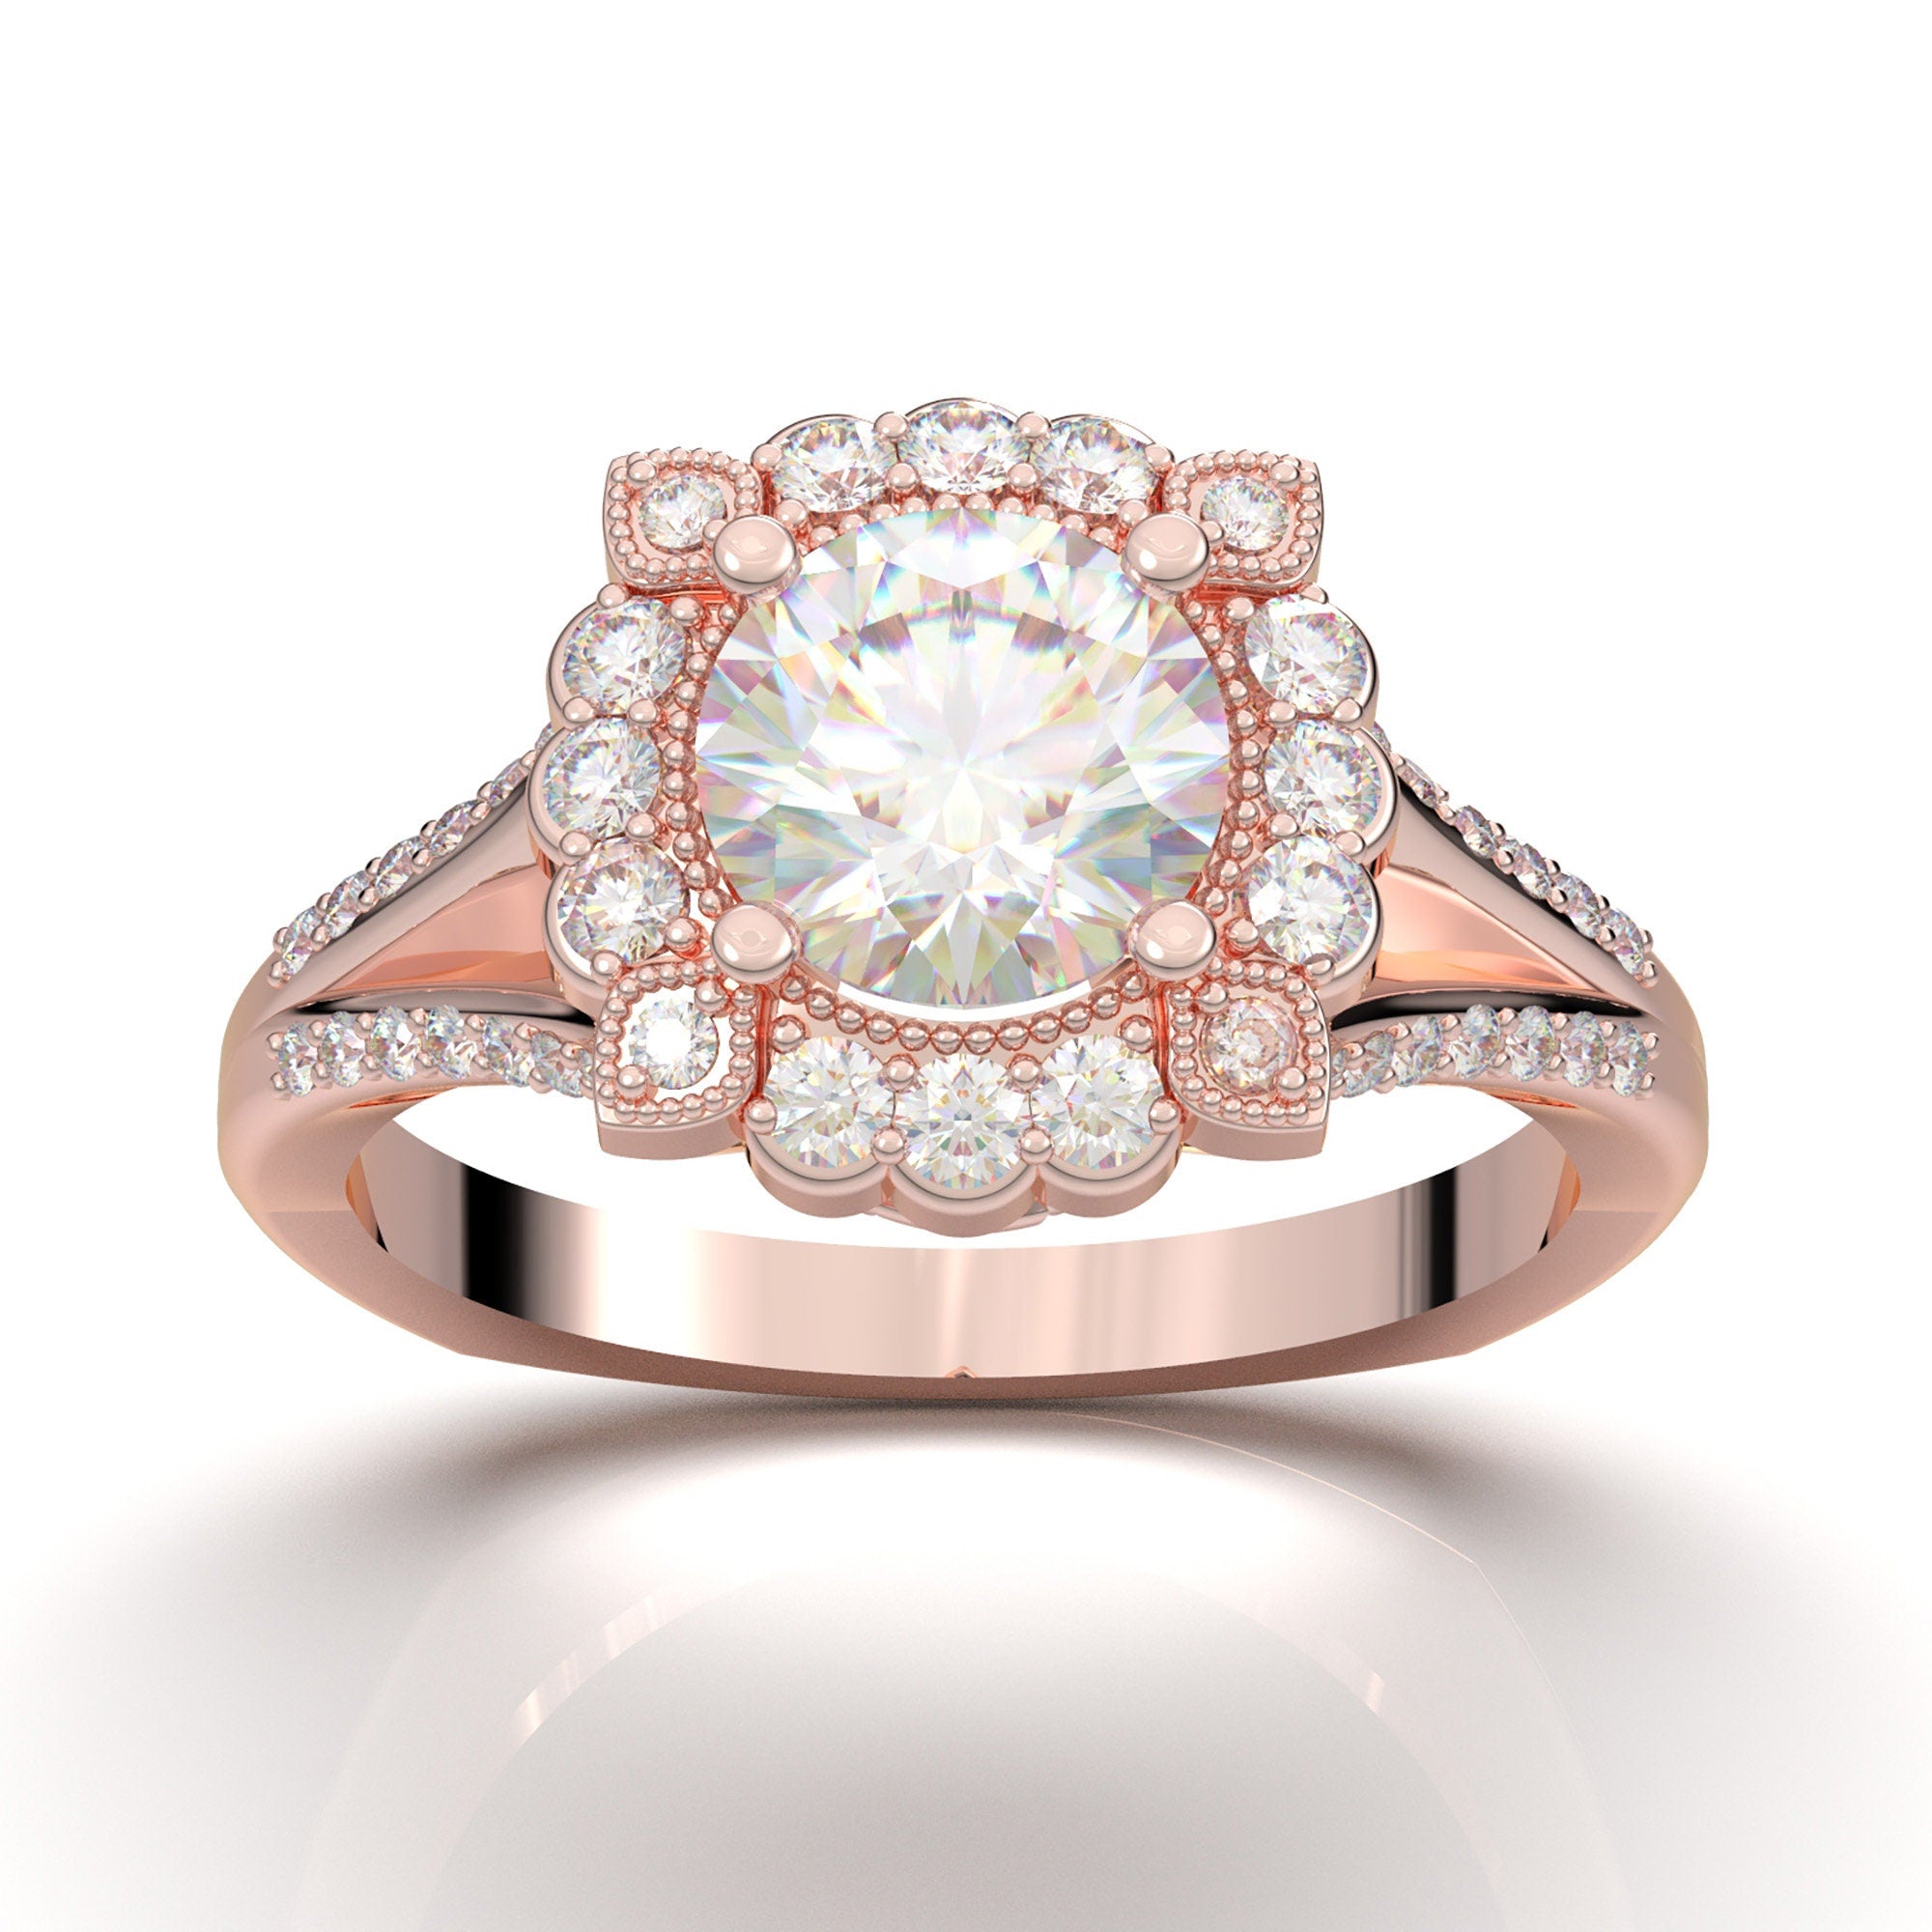 18K Rose Gold Flower Ring, Rose Gold Wedding Ring, Flower Engagement Ring,  Diamond Ring, Art Deco Ring, Minimal Modern Ring, Gift for Her - Etsy